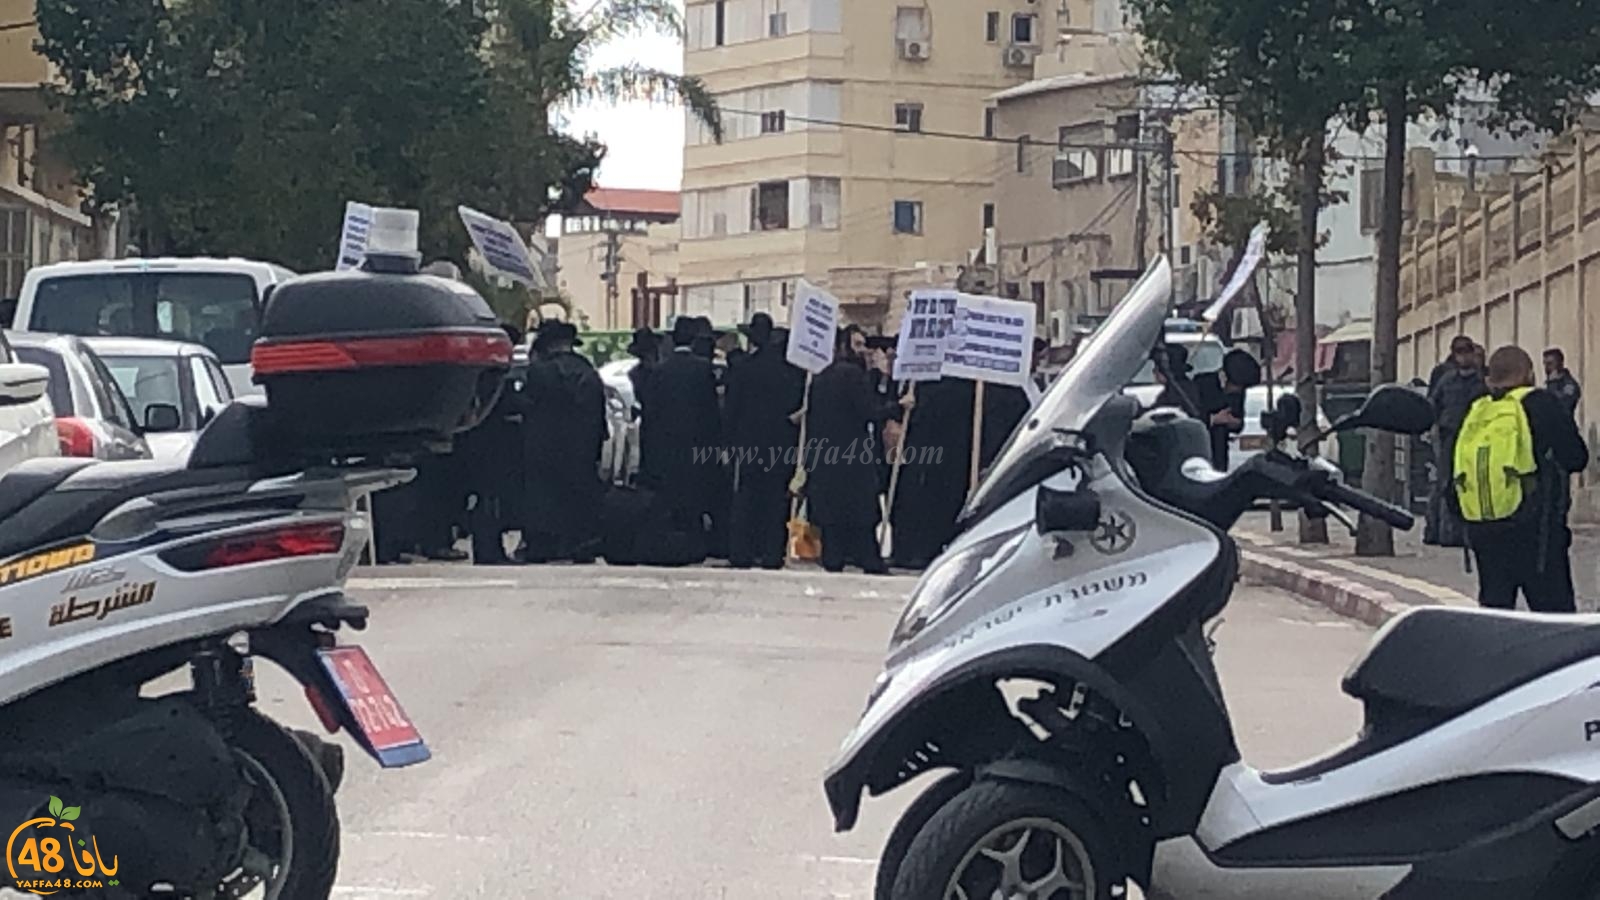  صور: تظاهرة للخارديم في يافا والشرطة تُغلق شارع شيفتي يسرائيل